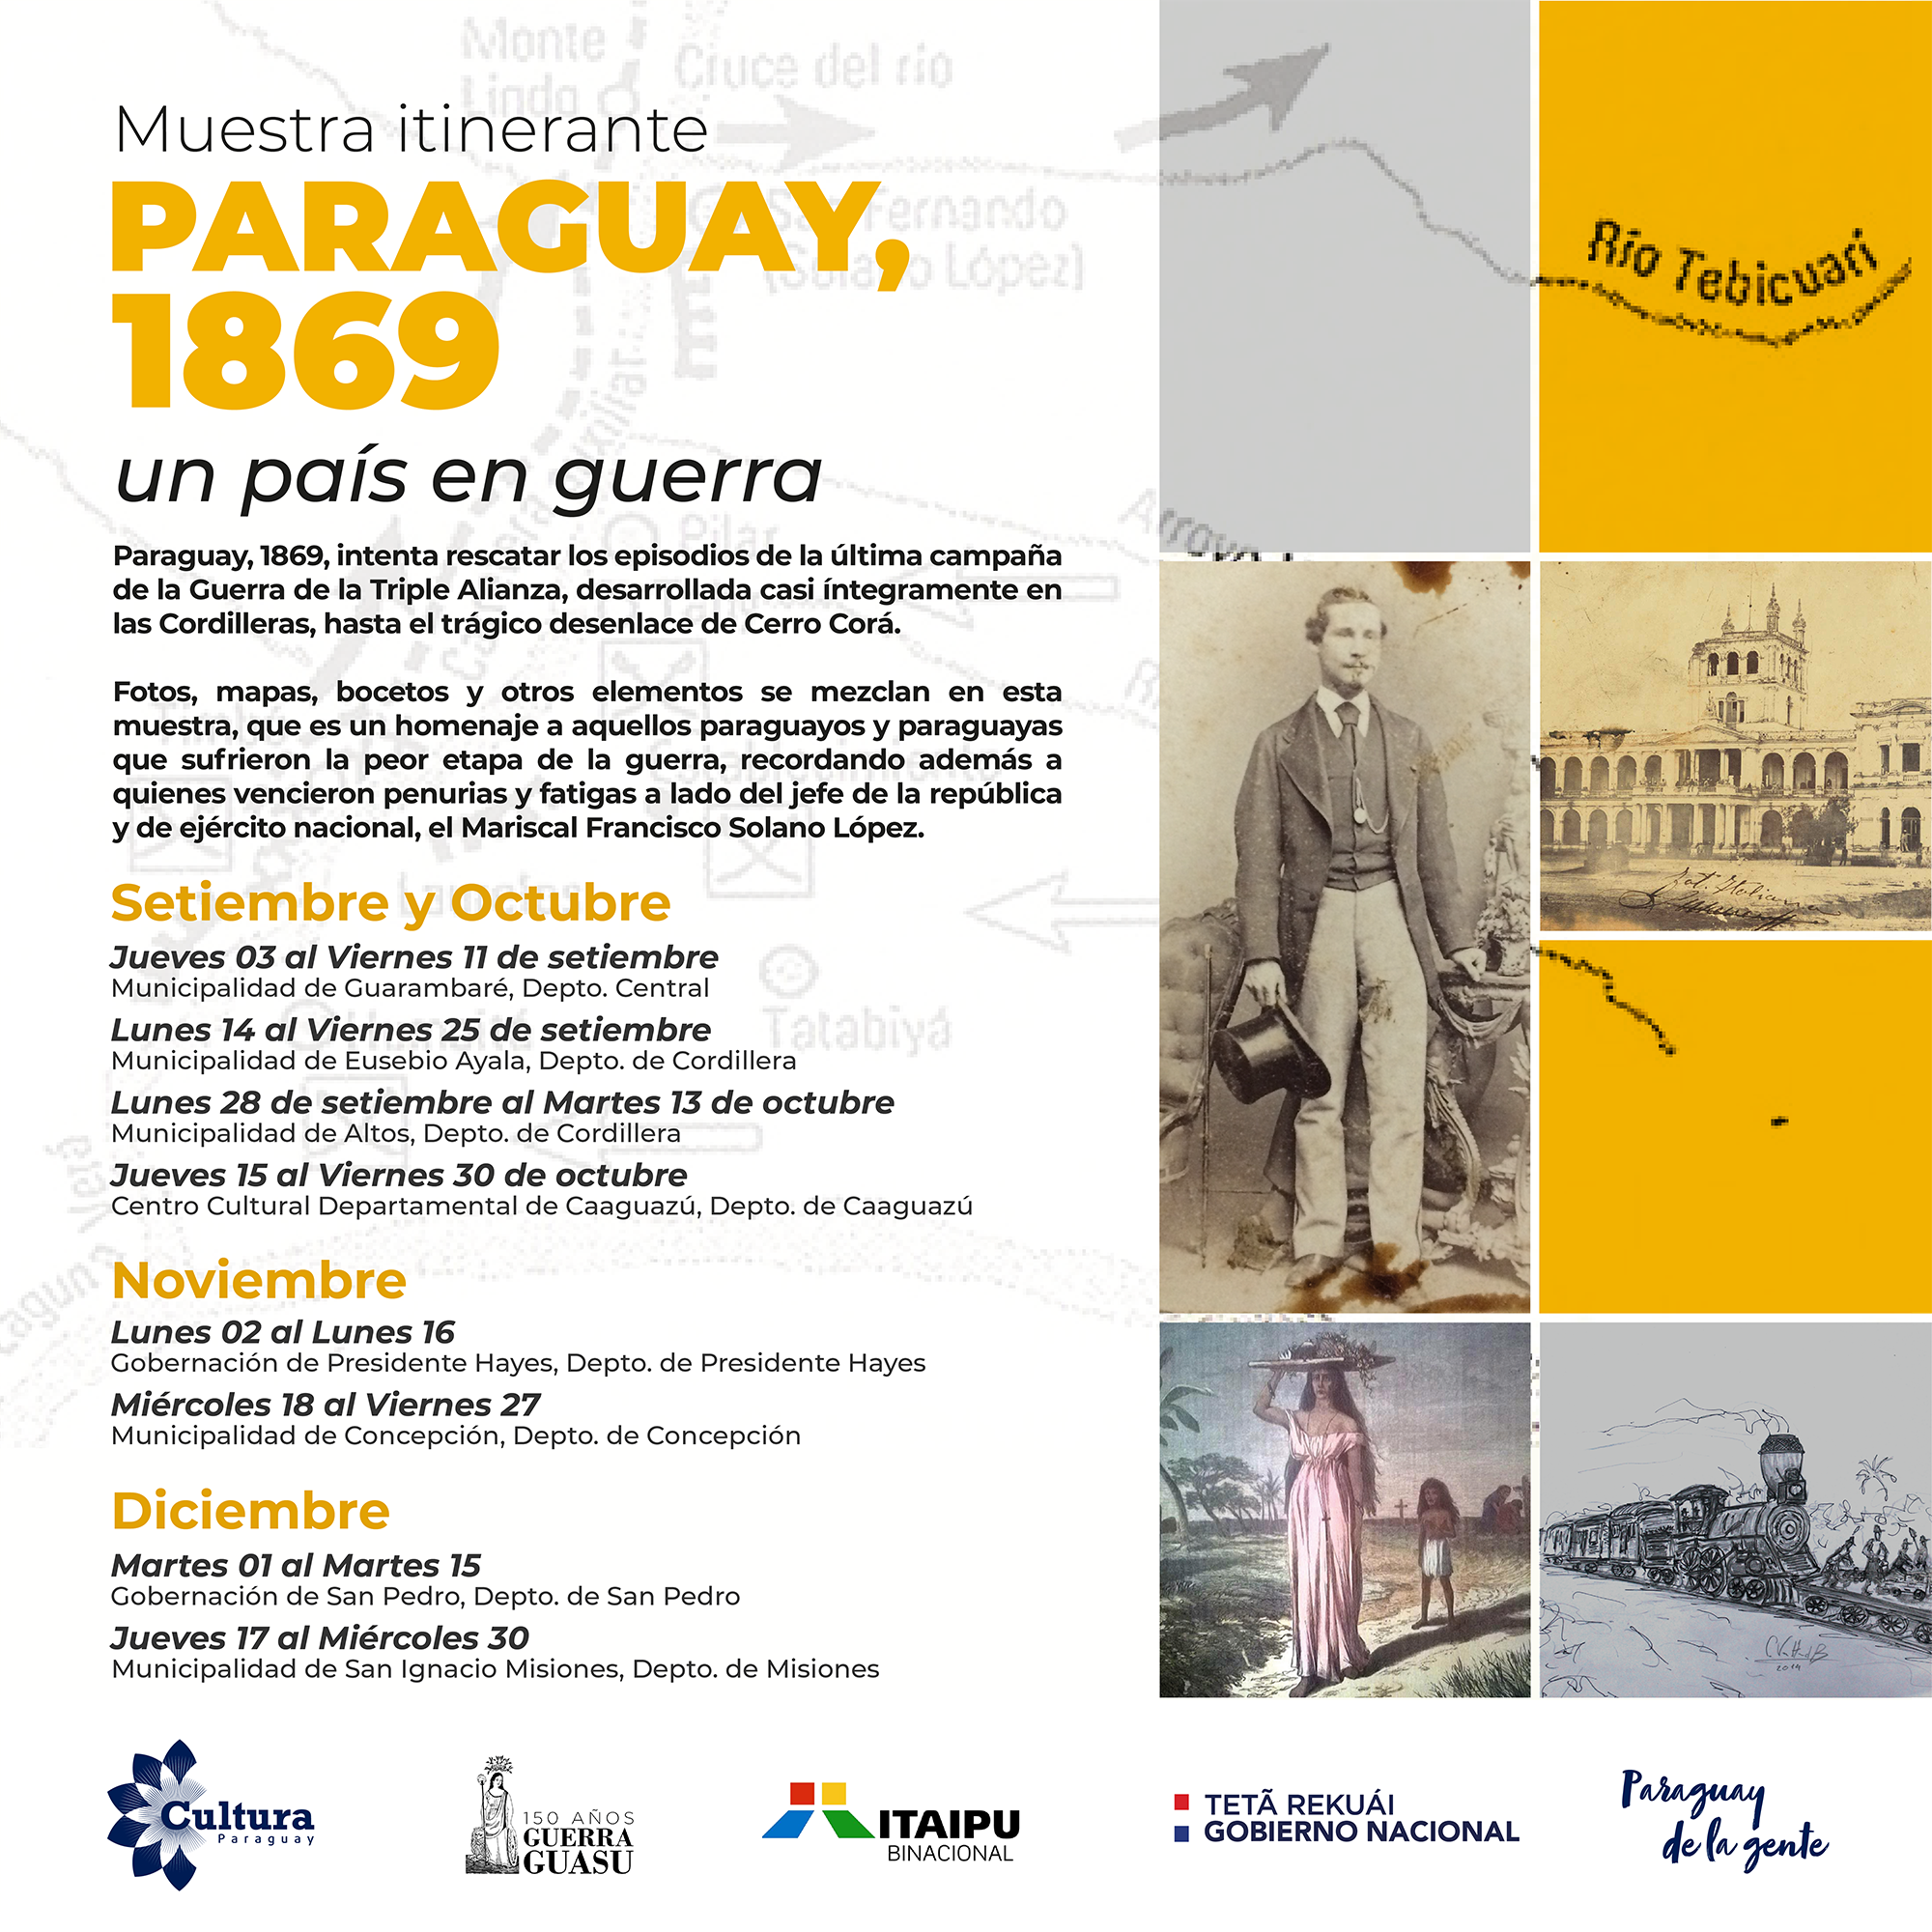 Vuelve muestra itinerante “Paraguay 1869, un país en guerra” imagen